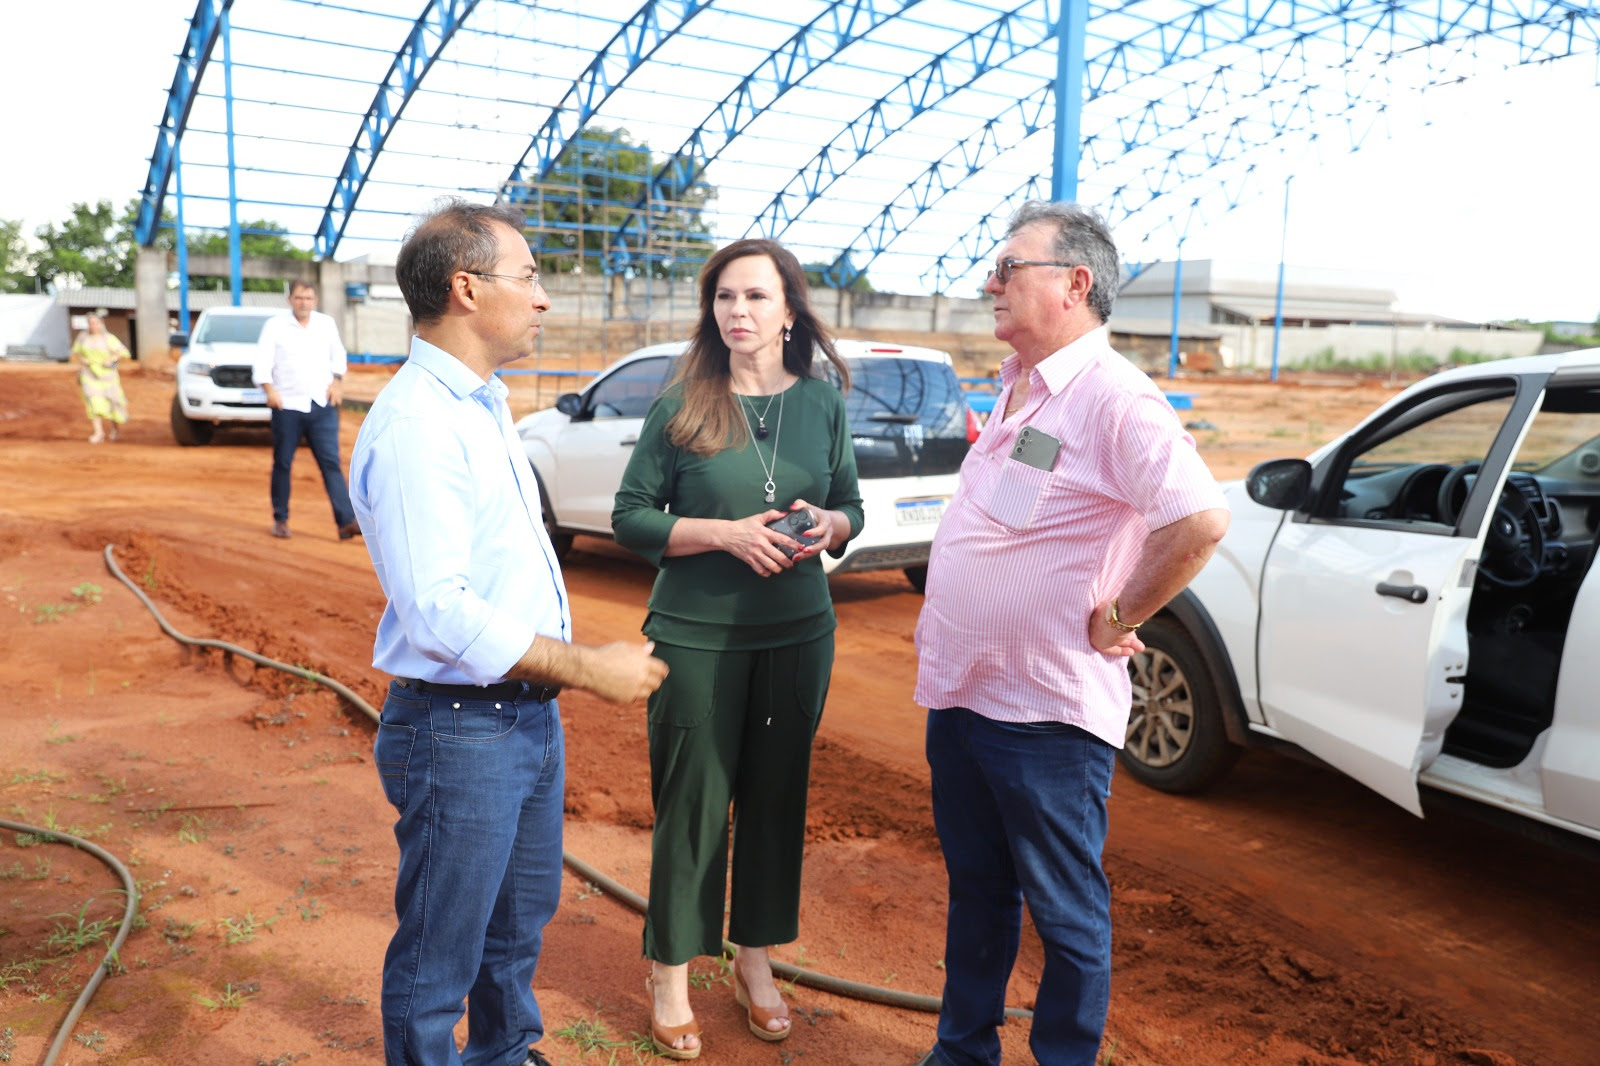 Com mais de 60% da estrutura concluída, a Escola de Tempo Integral da Vila Azul também foi uma das grandes obras da cidade visitada pela senadora Dorinha, que tem uma participação estratégica na articulação junto ao FNDE